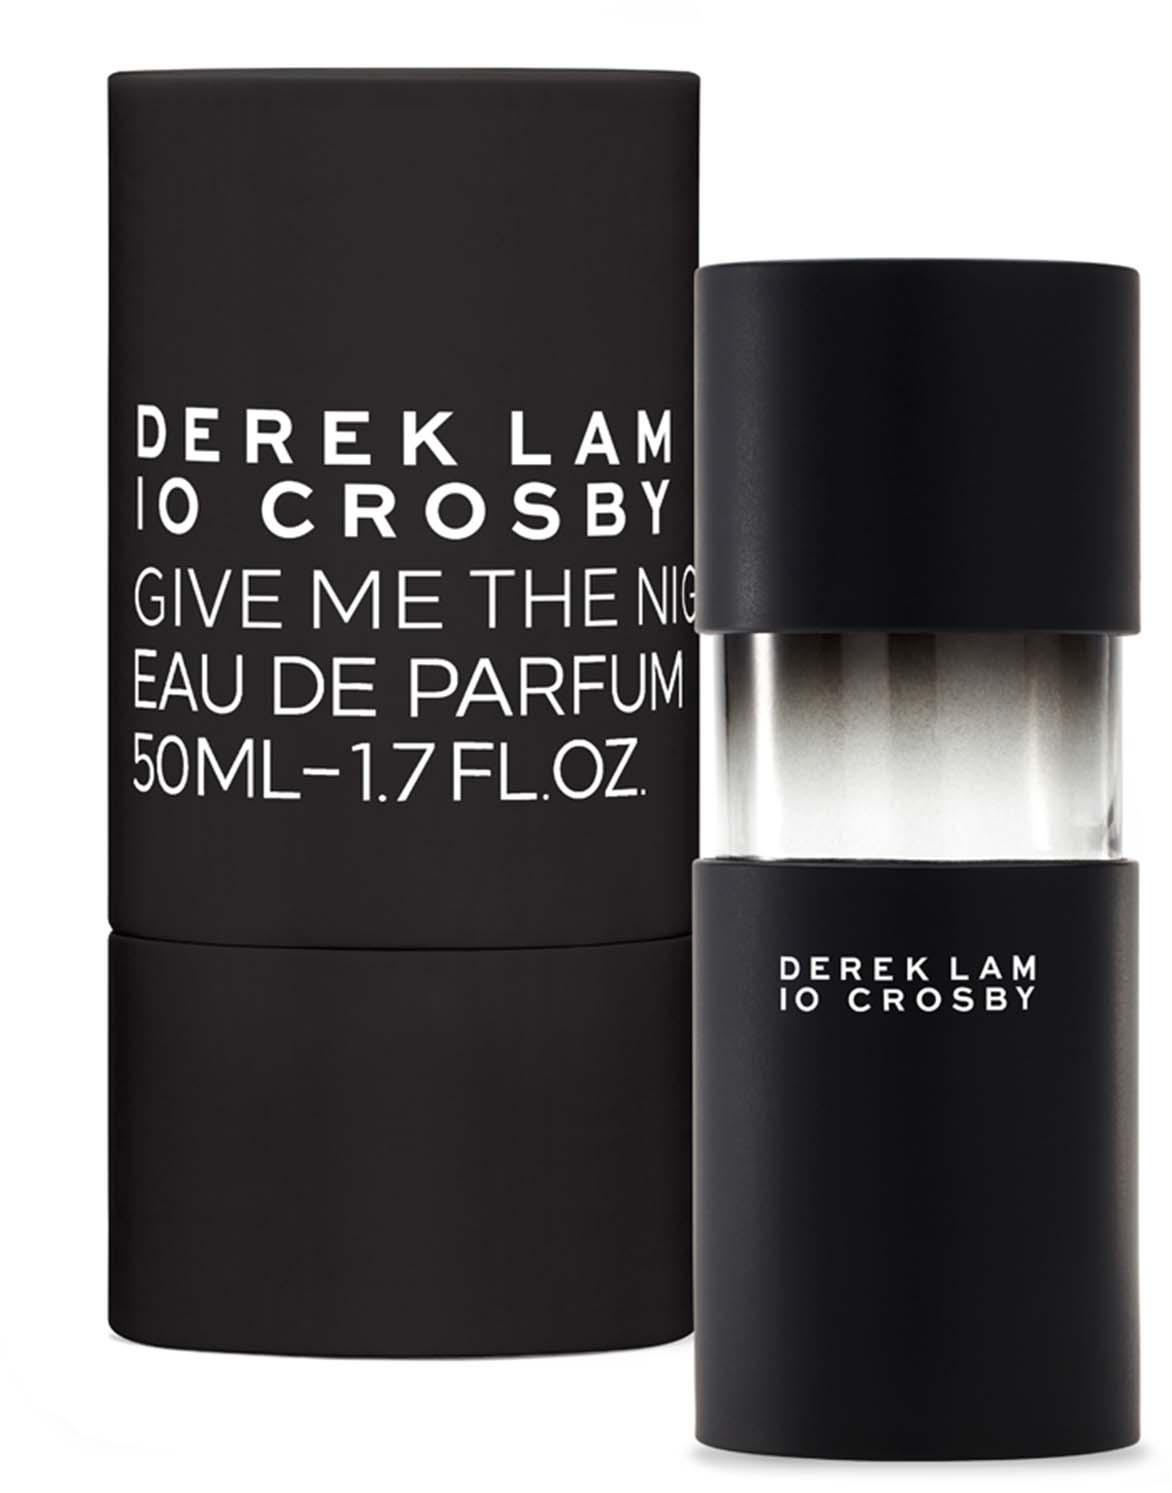 Derek Lam Perfume 10 Crosby Fragrance Review